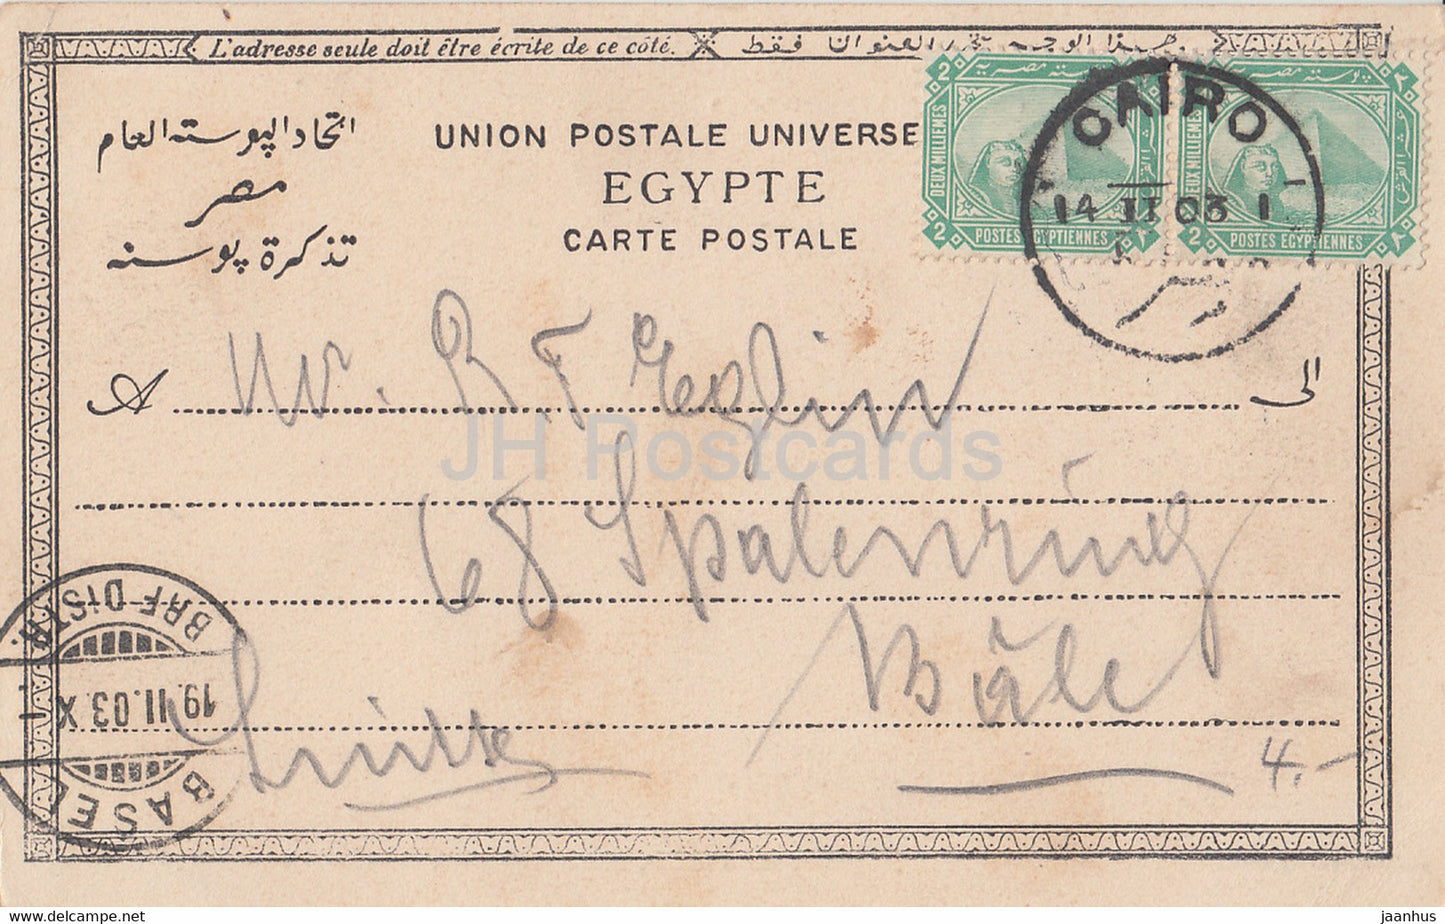 Philae - monde antique - 251 - carte postale ancienne - 1903 - Egypte - utilisé